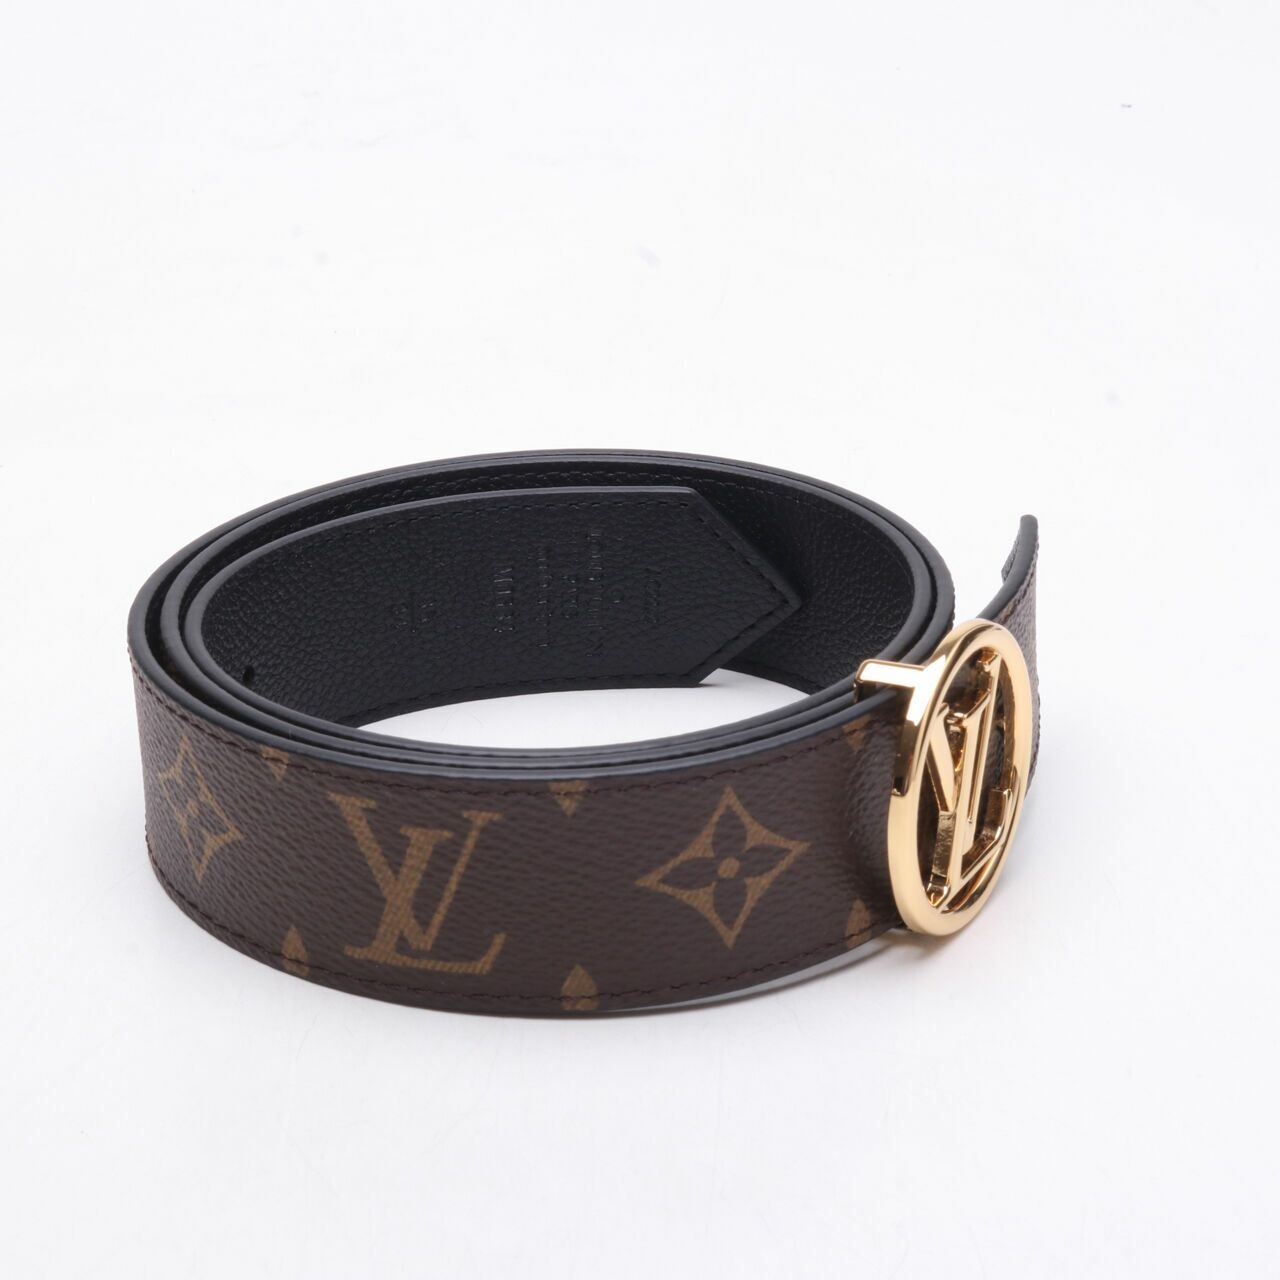 Louis Vuitton Monogram Circle Reversible Belt